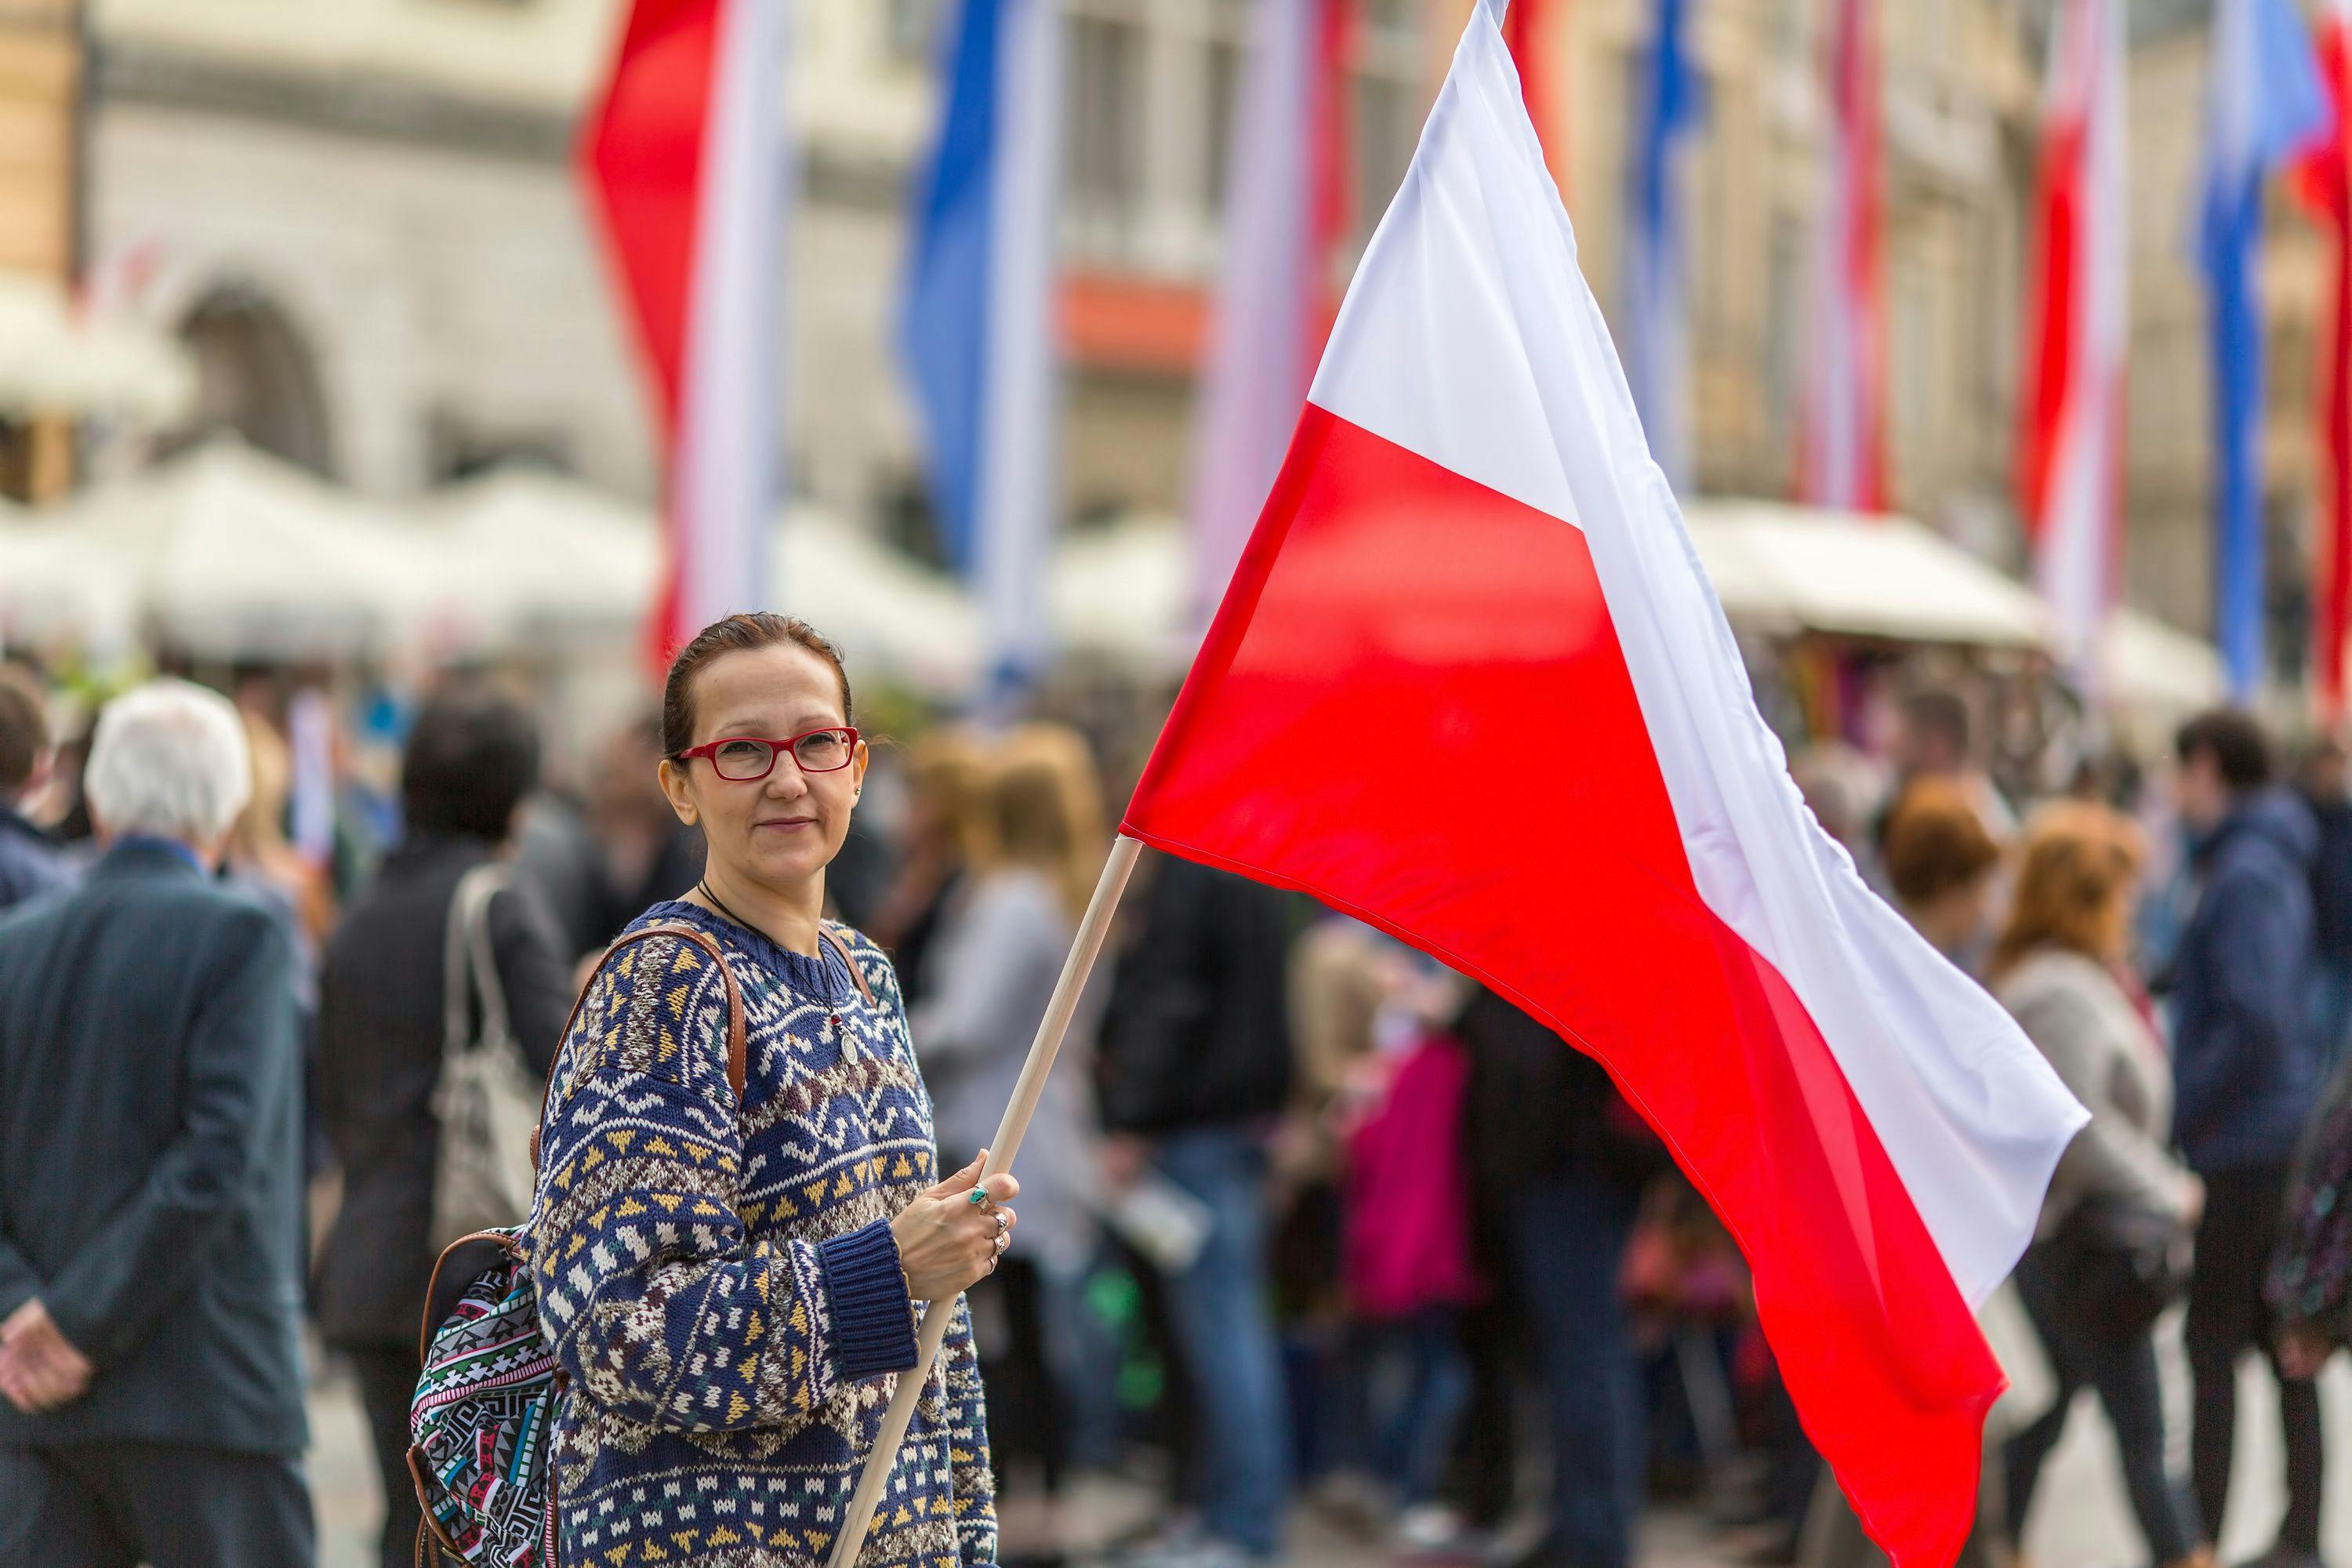 woman holding Poland flag | Image credit: De Visu - stock.adobe.com